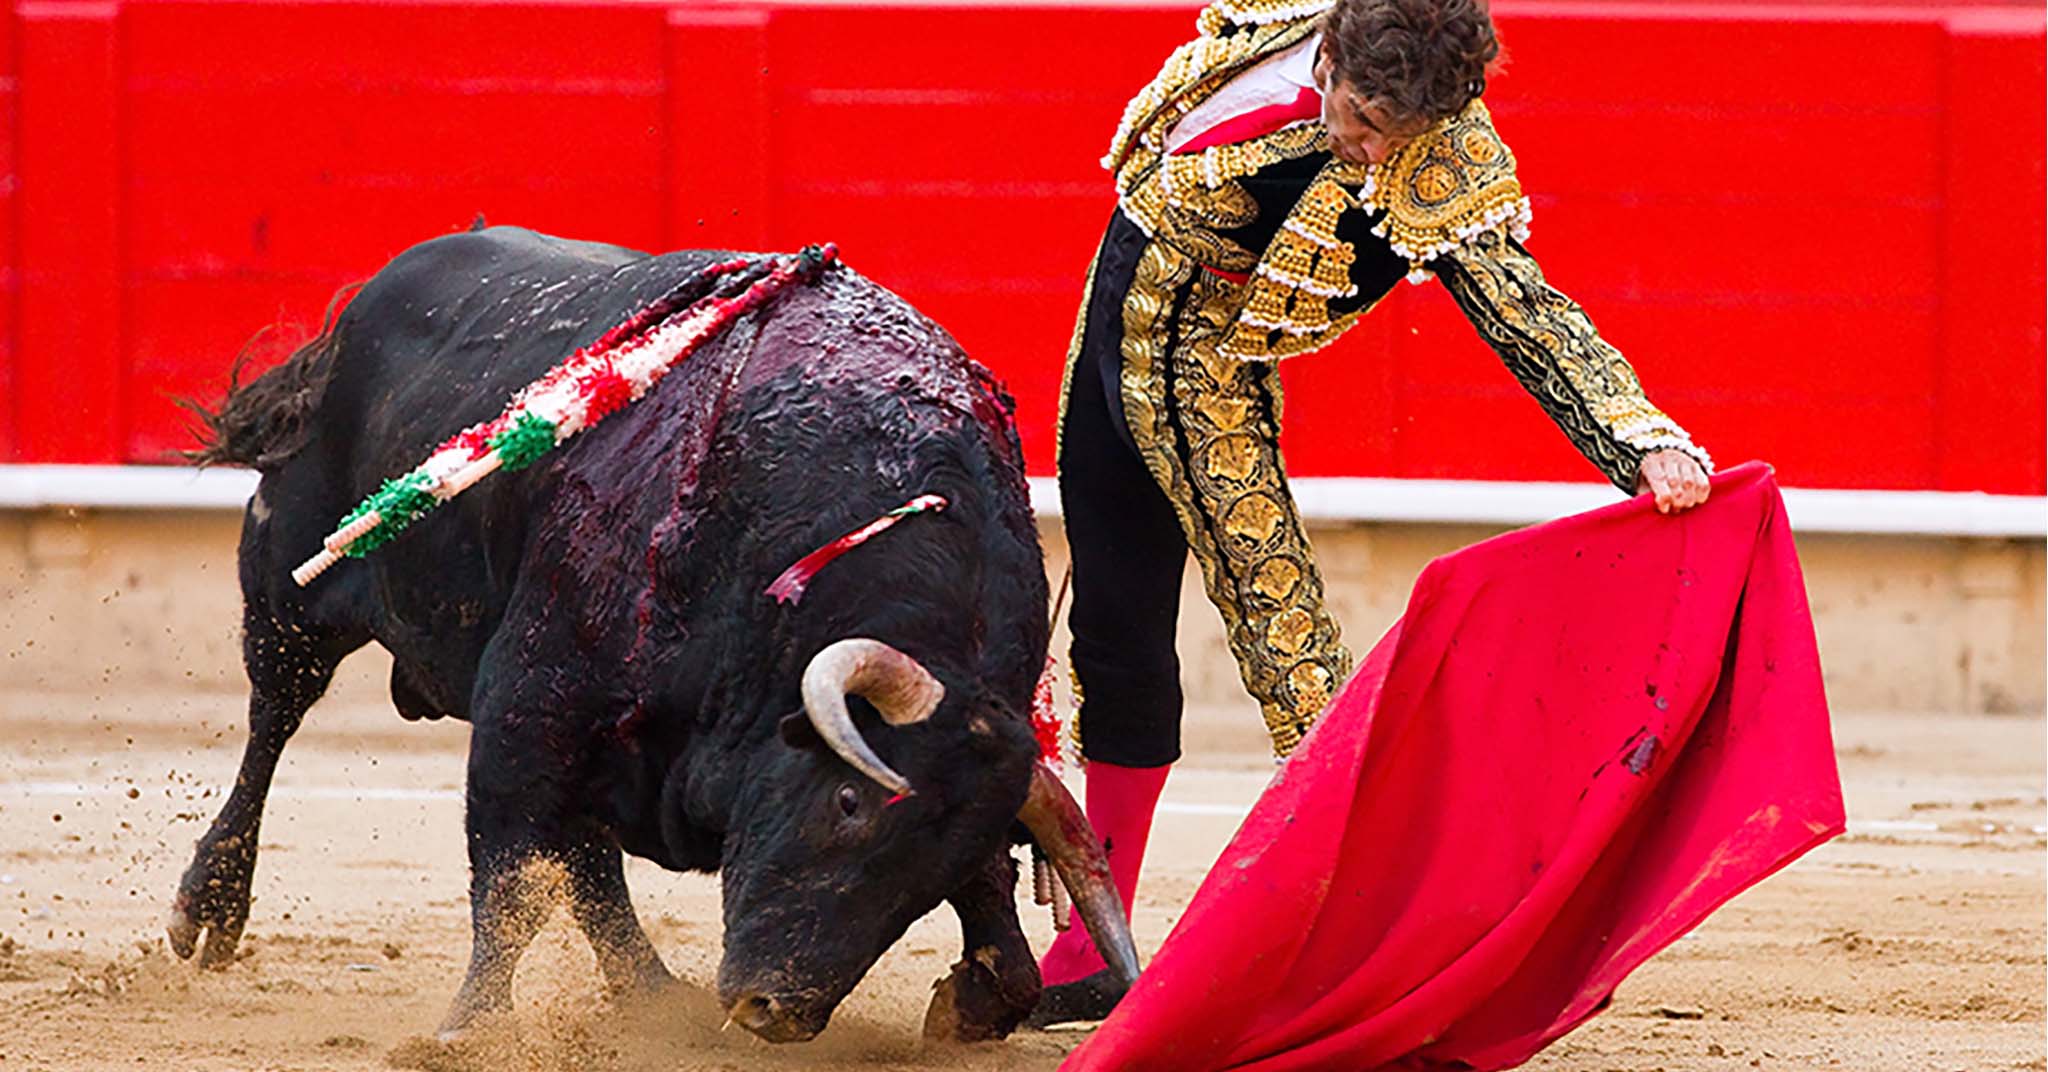 闘牛・人々を熱狂させるスペインの国技の魅力に迫る